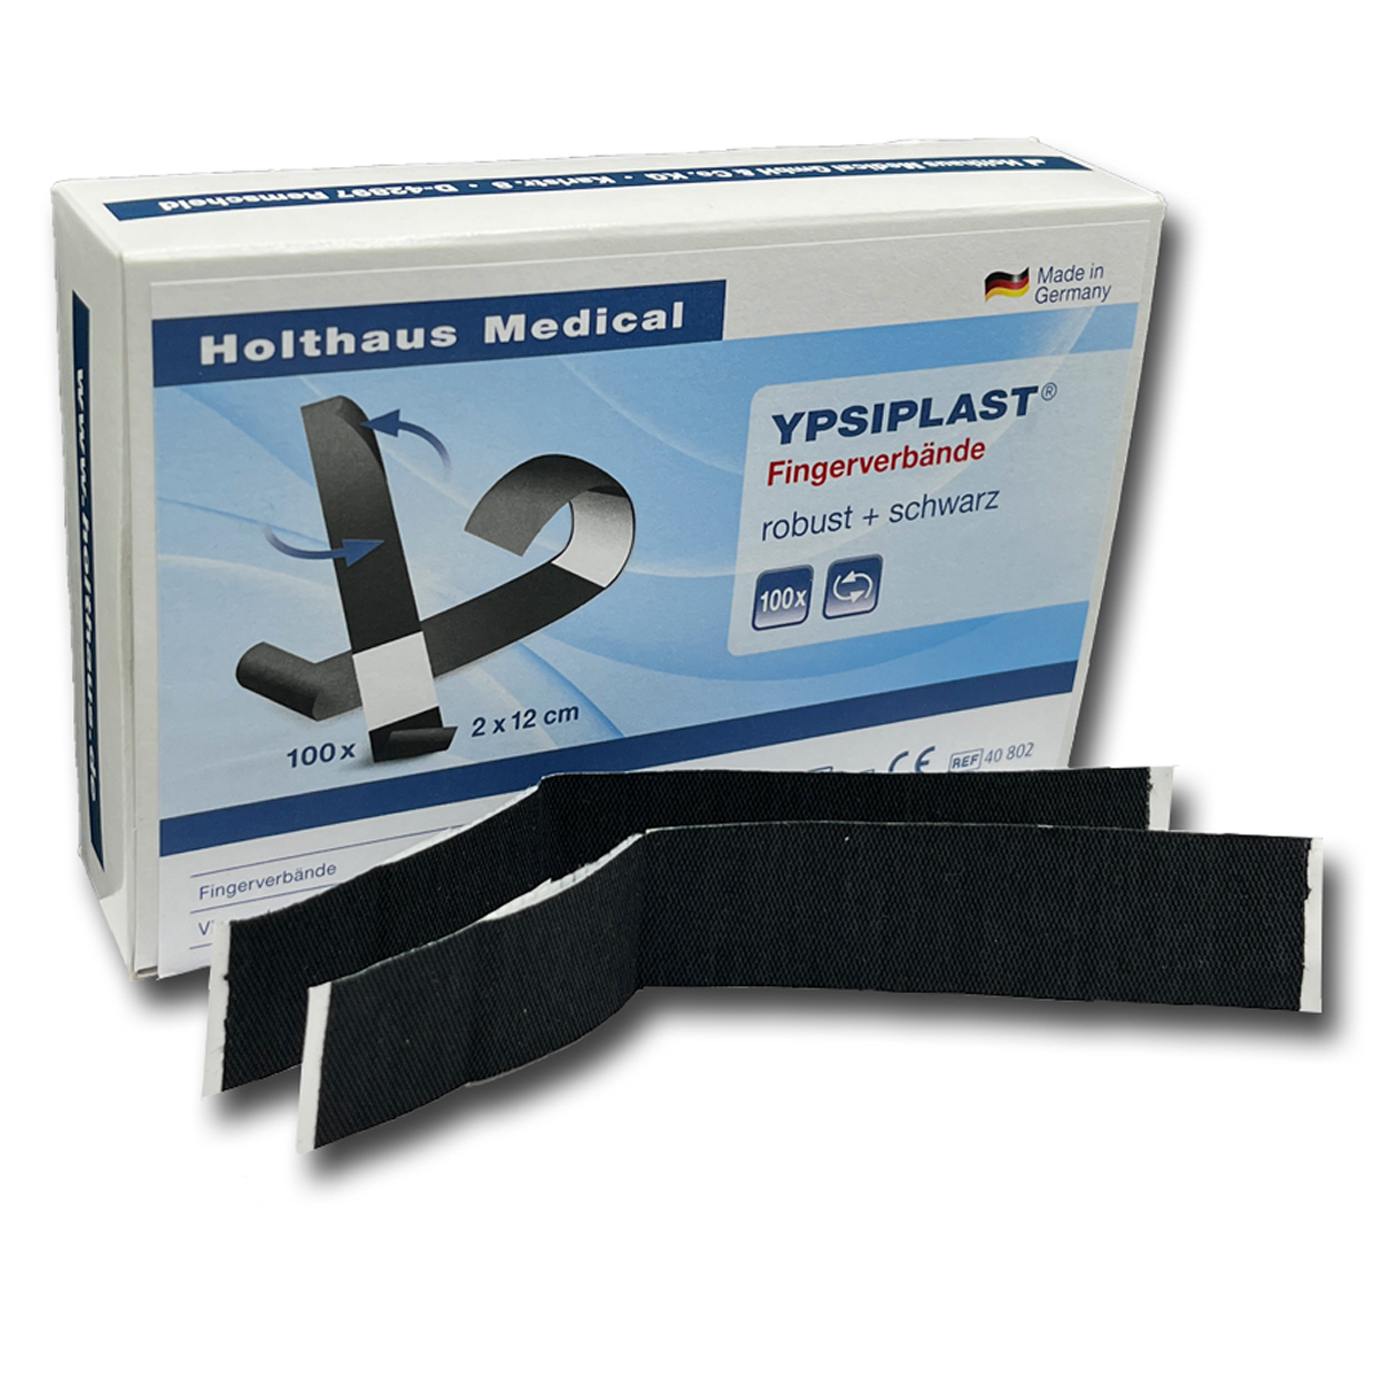 Holthaus Medical Ypsiplast Fingerverbände, robust + schwarz - 100 Stück